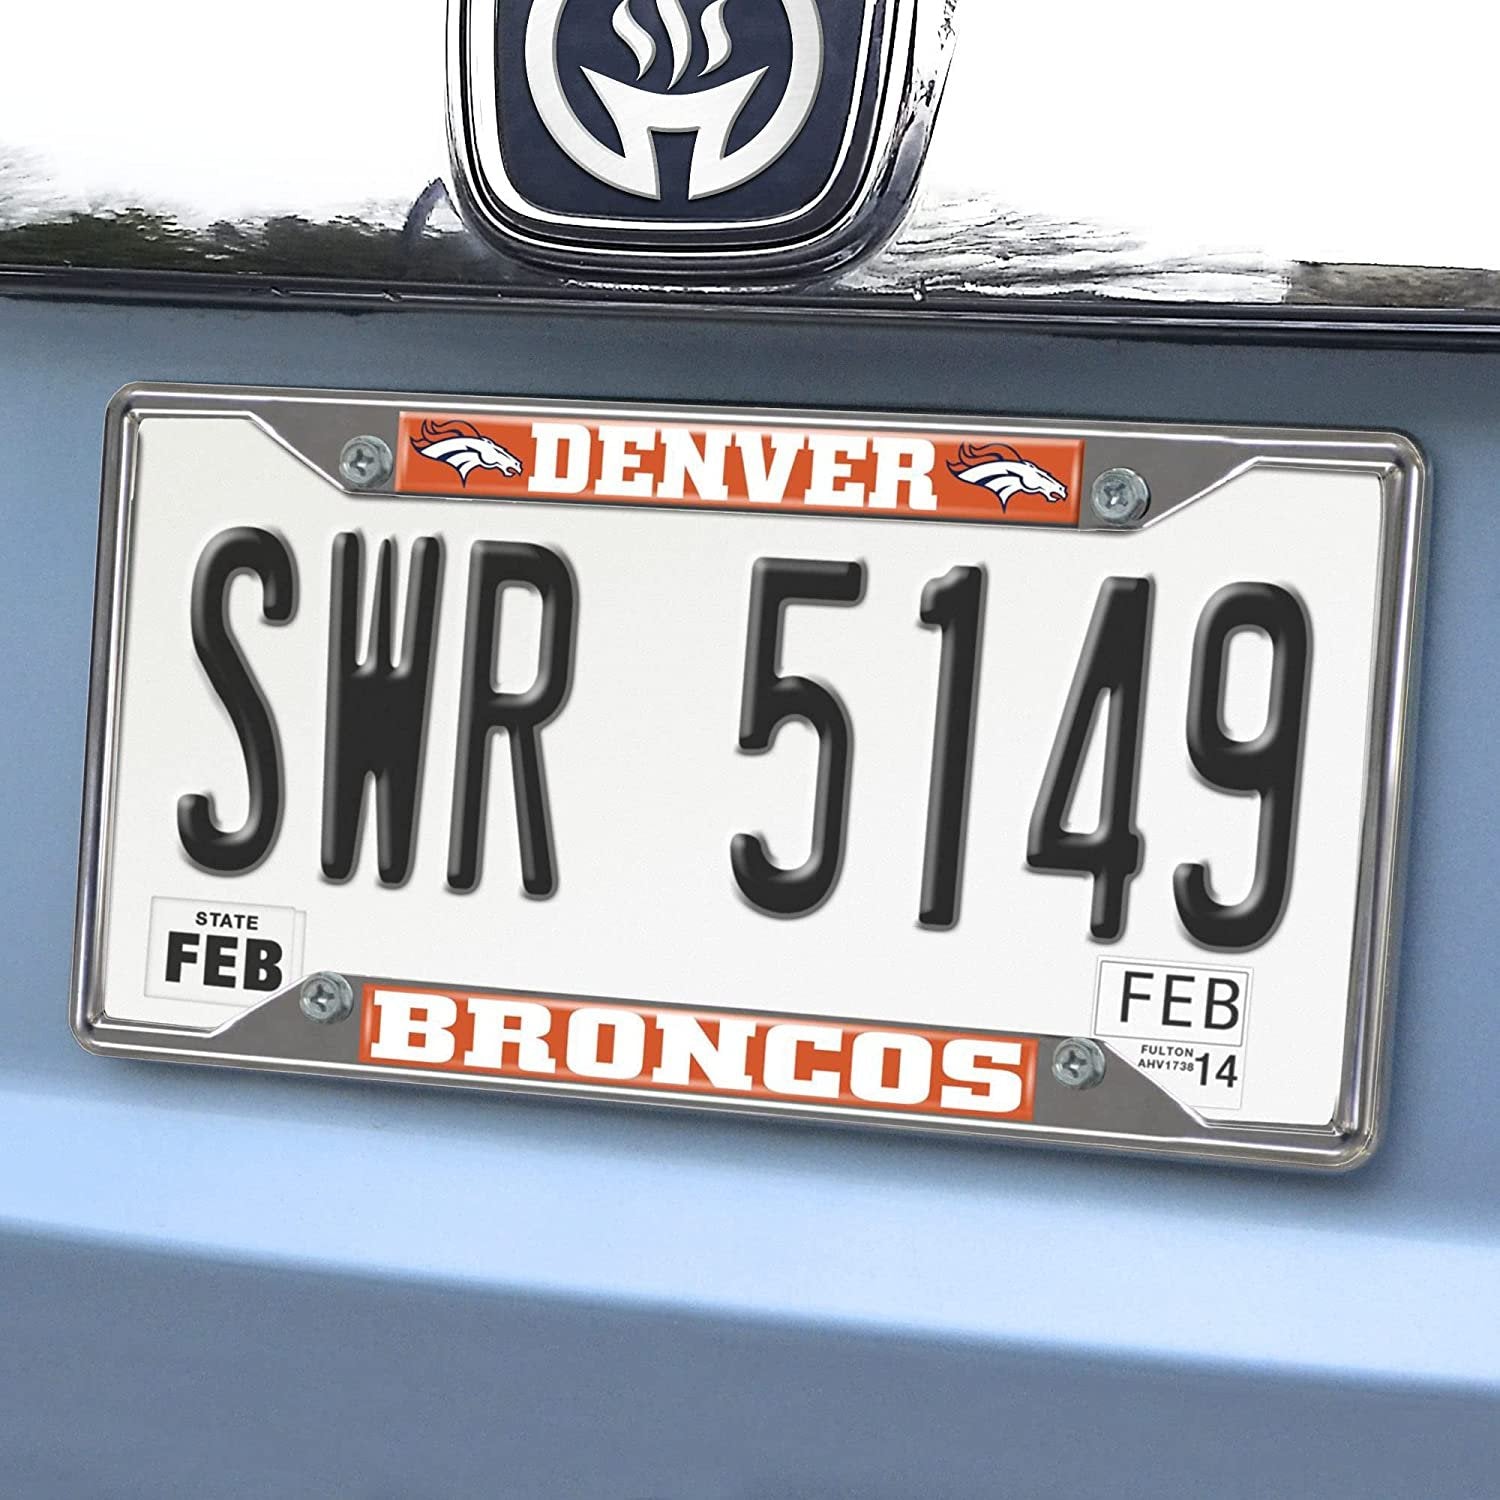 Denver Broncos Metal License Plate Frame Chrome Tag Cover 6x12 Inch